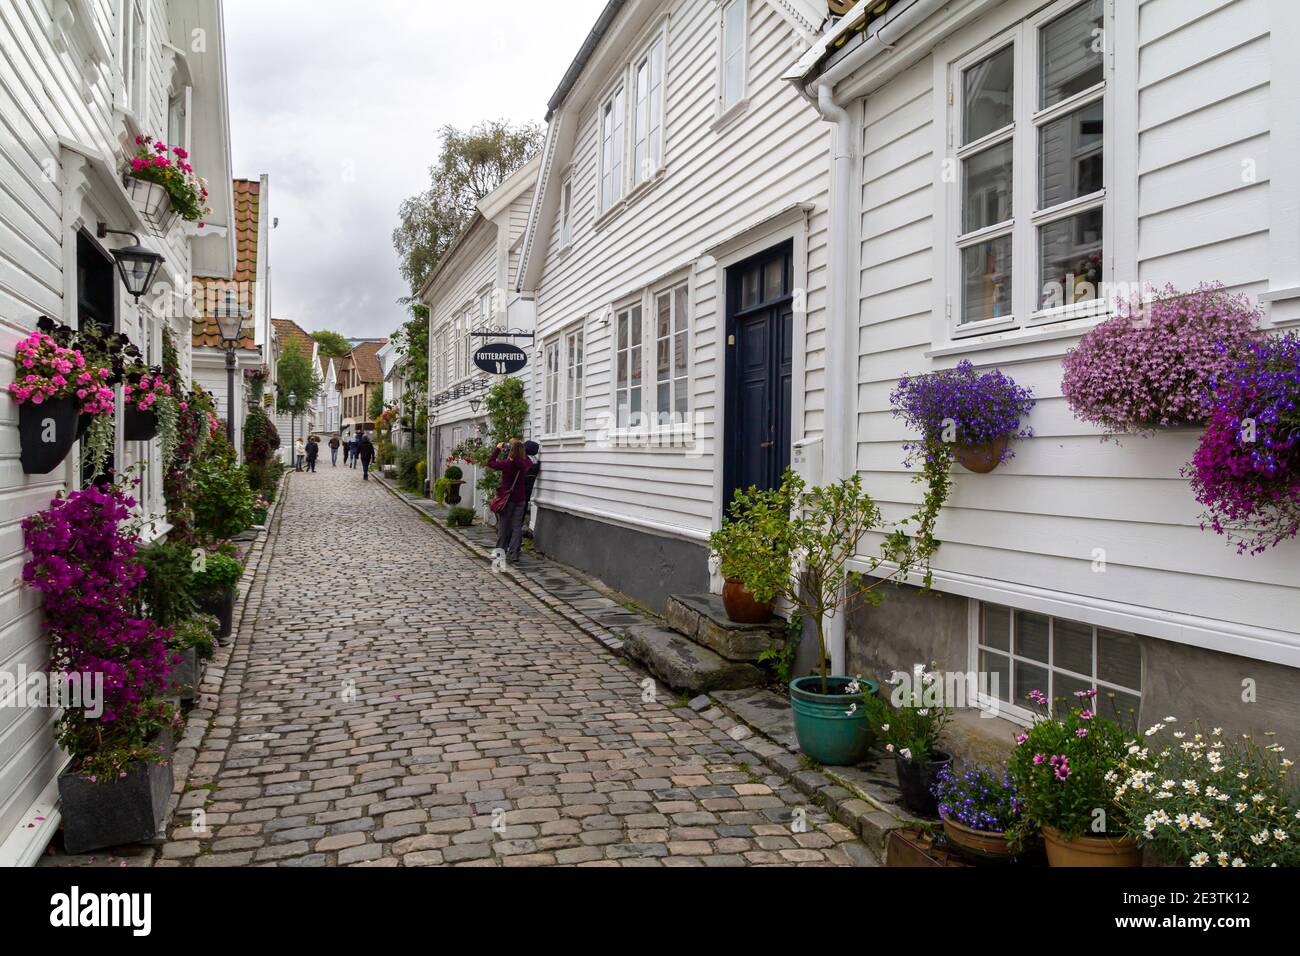 Gamle Stavanger, una zona histórica de la ciudad antigua con edificios de madera blanca restaurada de los siglos 18 y 19 Foto de stock